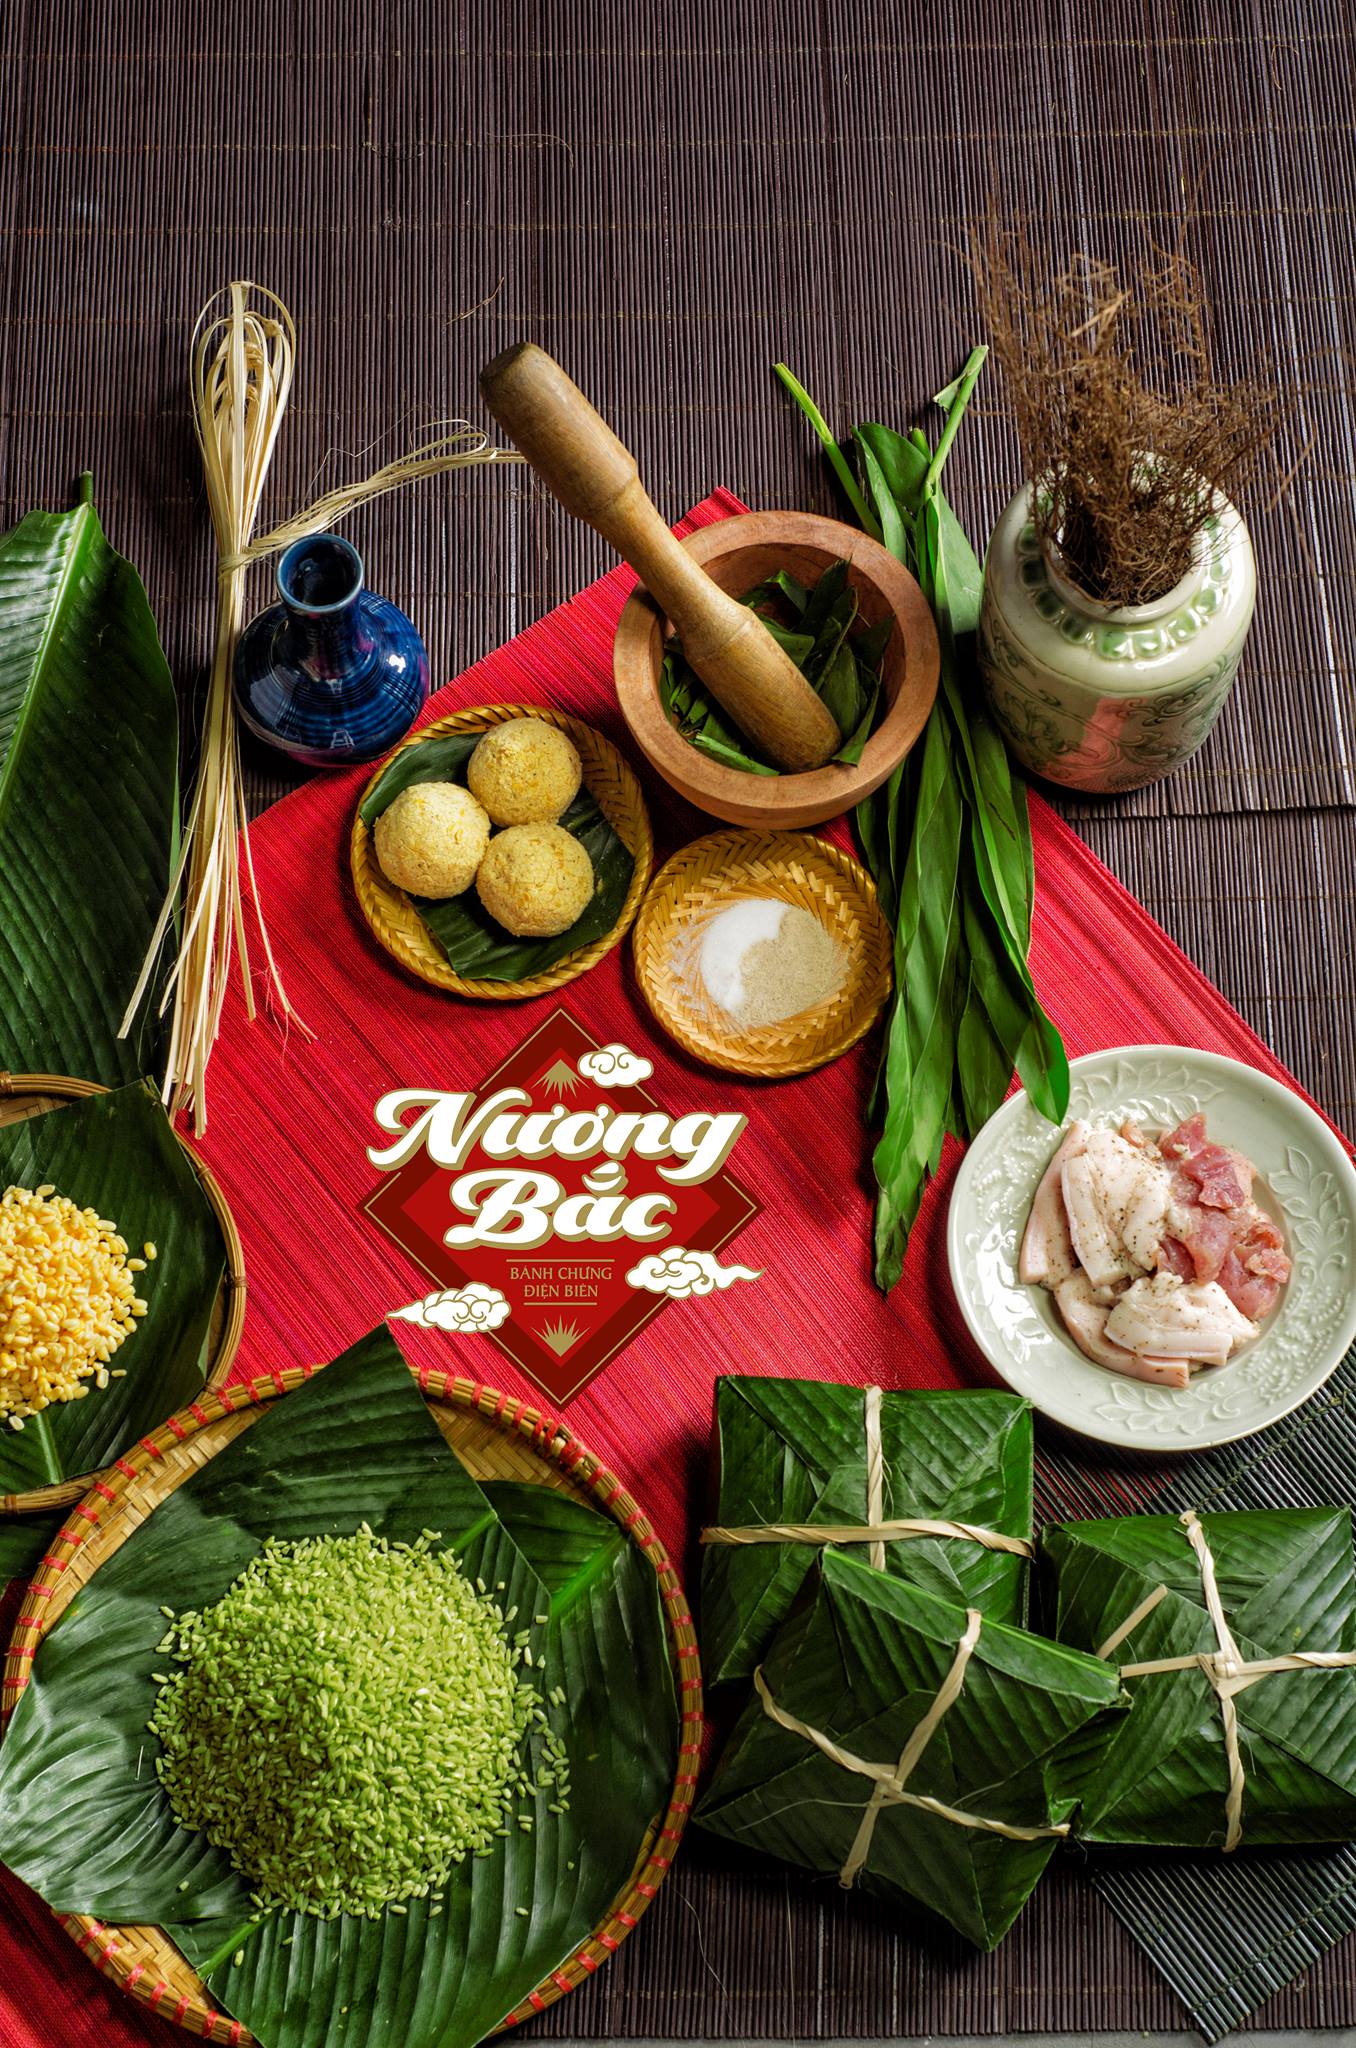 Hình ảnh bánh chưng: Không chỉ là một món ăn ngon và tinh túy của truyền thống Việt Nam, bánh chưng còn là một chủ đề hấp dẫn cho các bạn yêu thích nhiếp ảnh. Xem hình ảnh bánh chưng để tìm hiểu cách các nhiếp ảnh gia đã lưu giữ và truyền tải hình ảnh của món ăn này trong từng khung hình tuyệt đẹp.